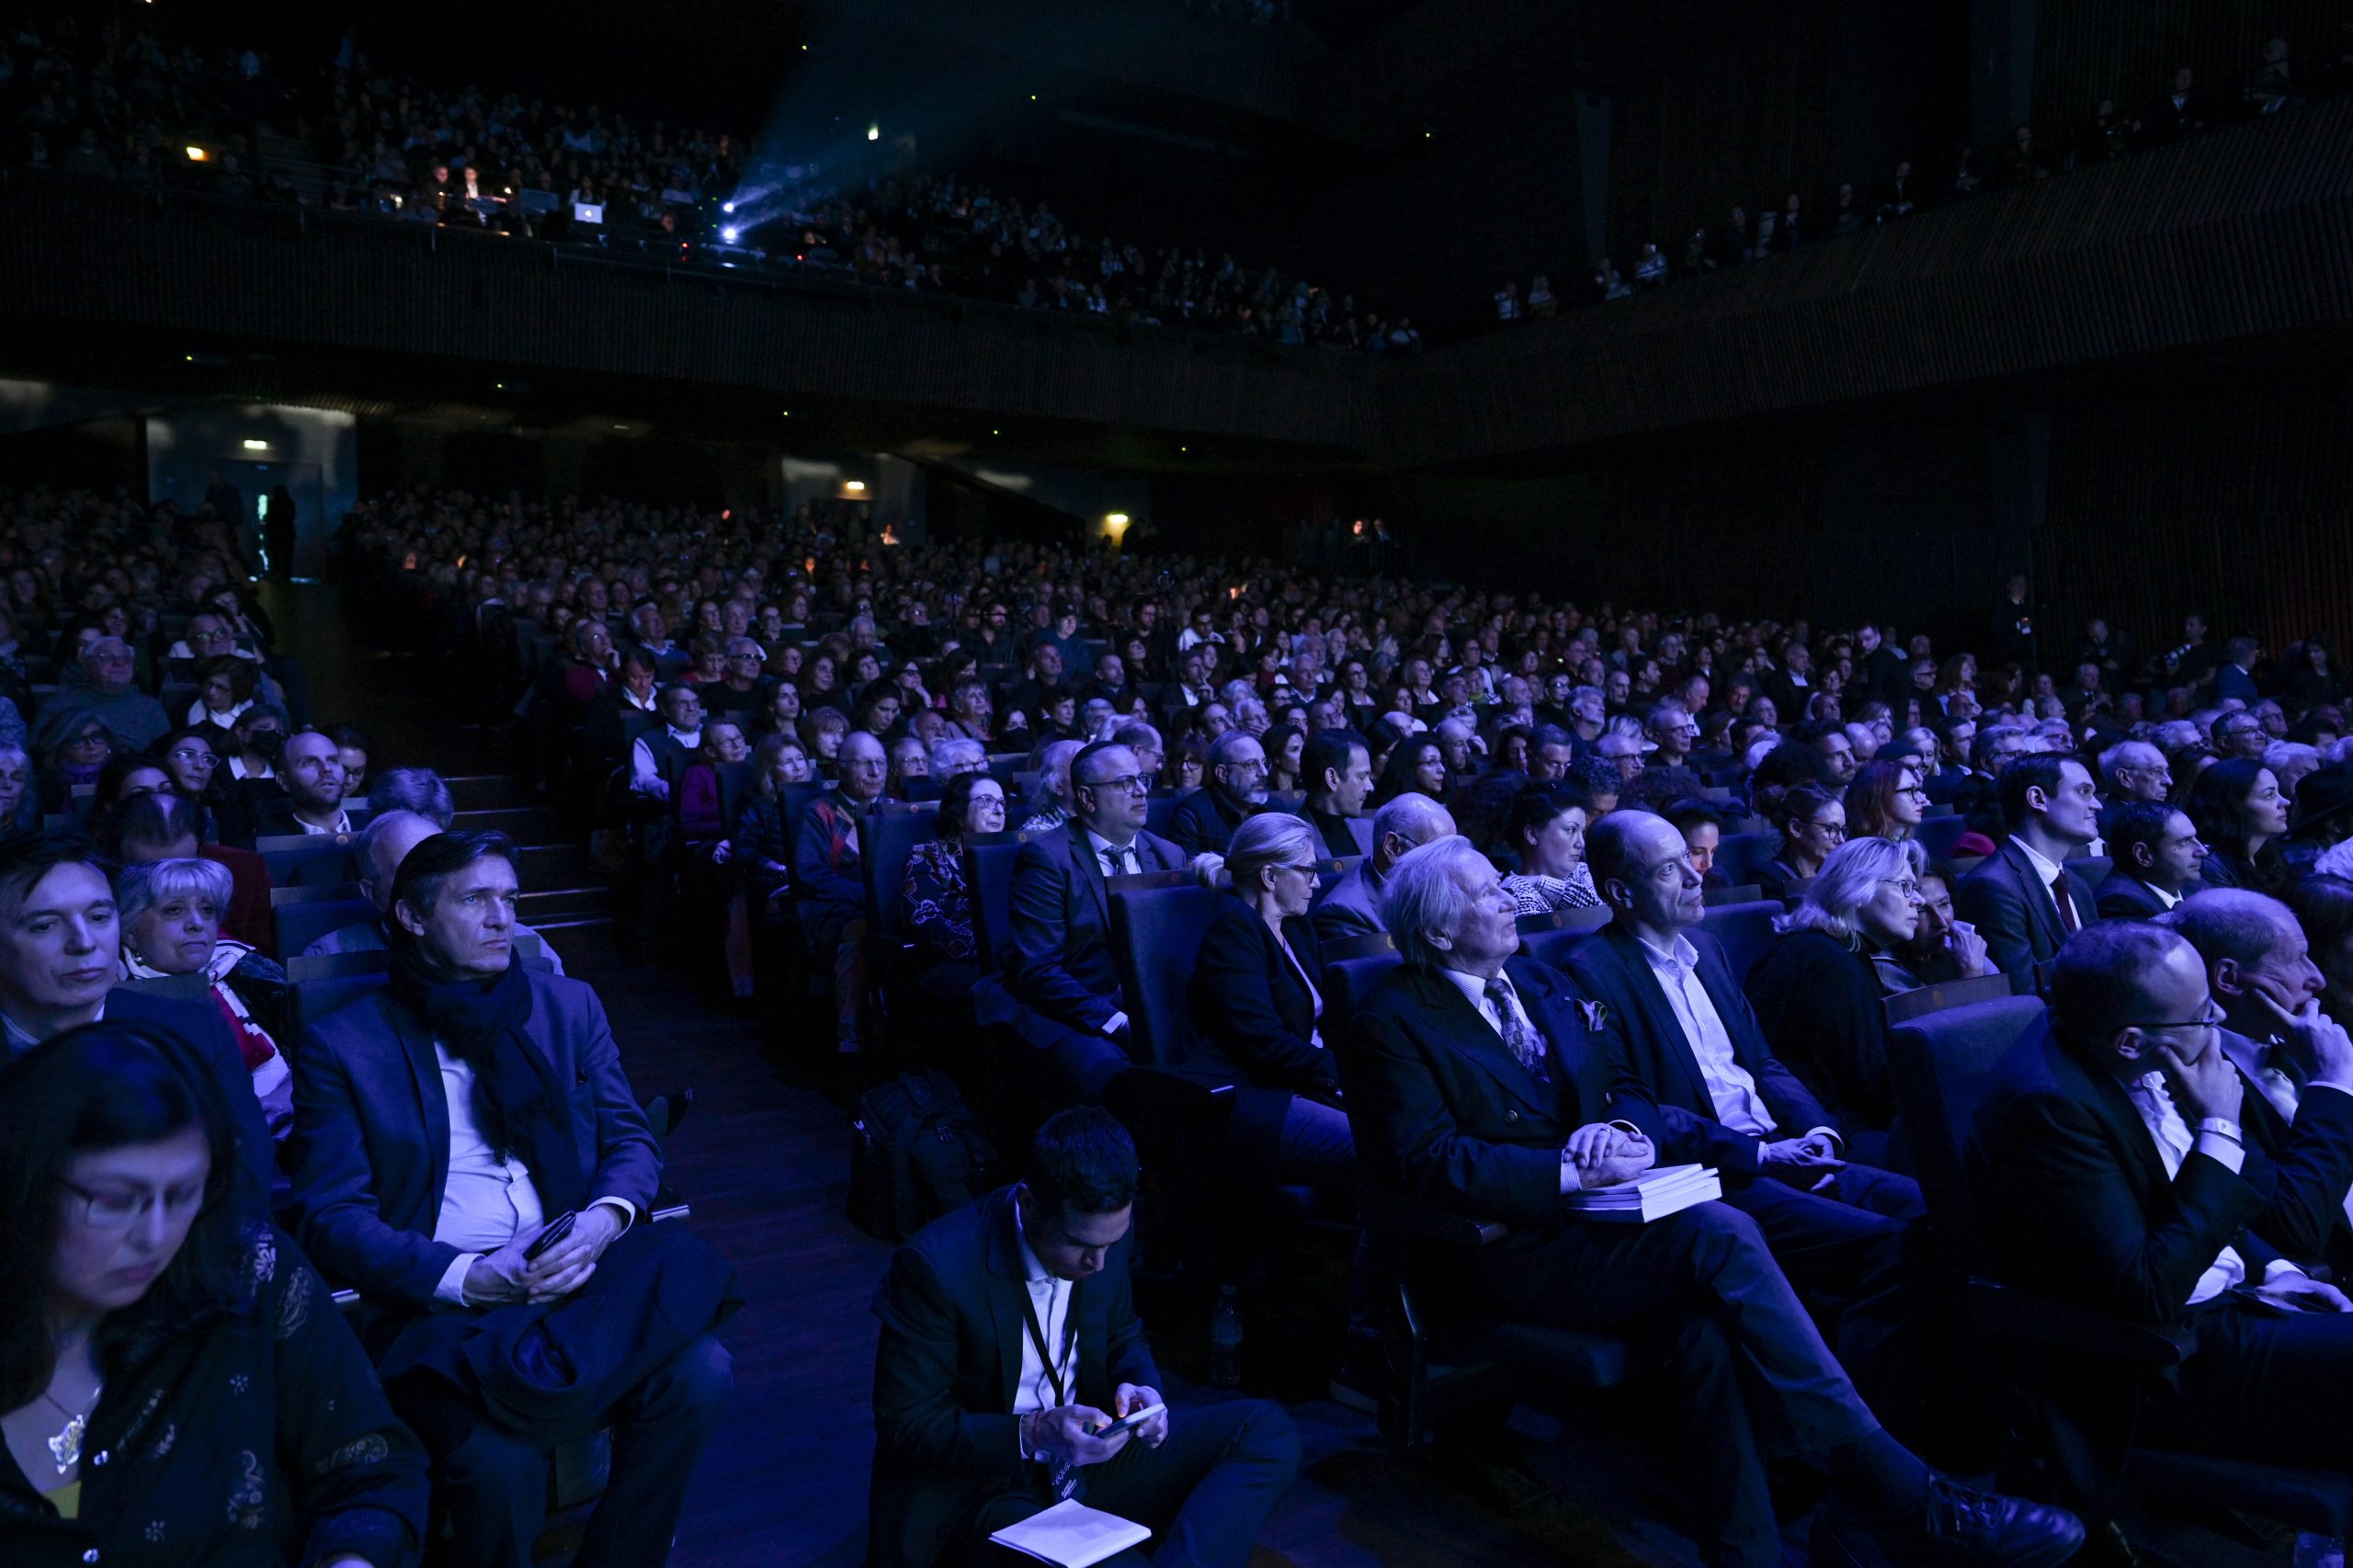 Le public de la salle Pleyel lors de la grande conférence de BHL sur son livre « Solitude d'Israël ».